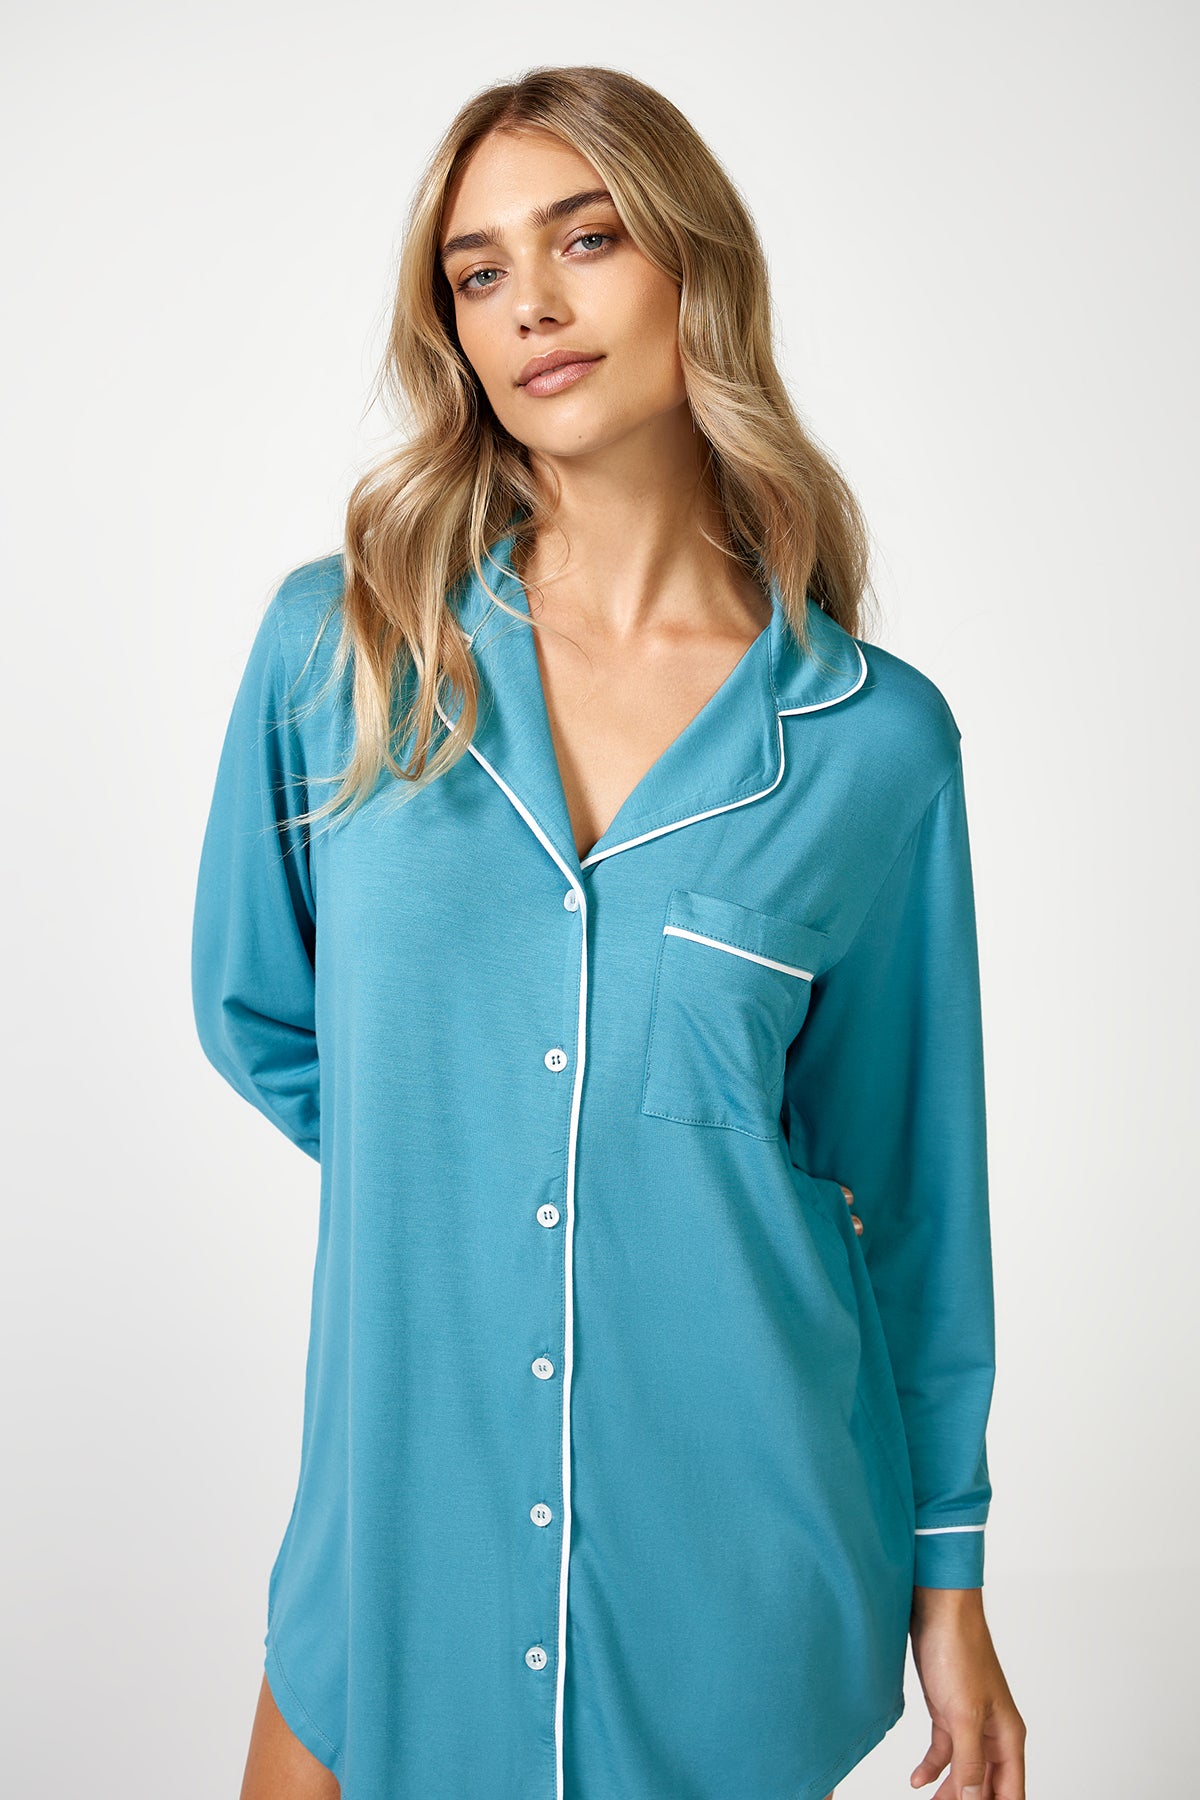 The Night Shirt Teal - Pyjamas - POCO by Pippa